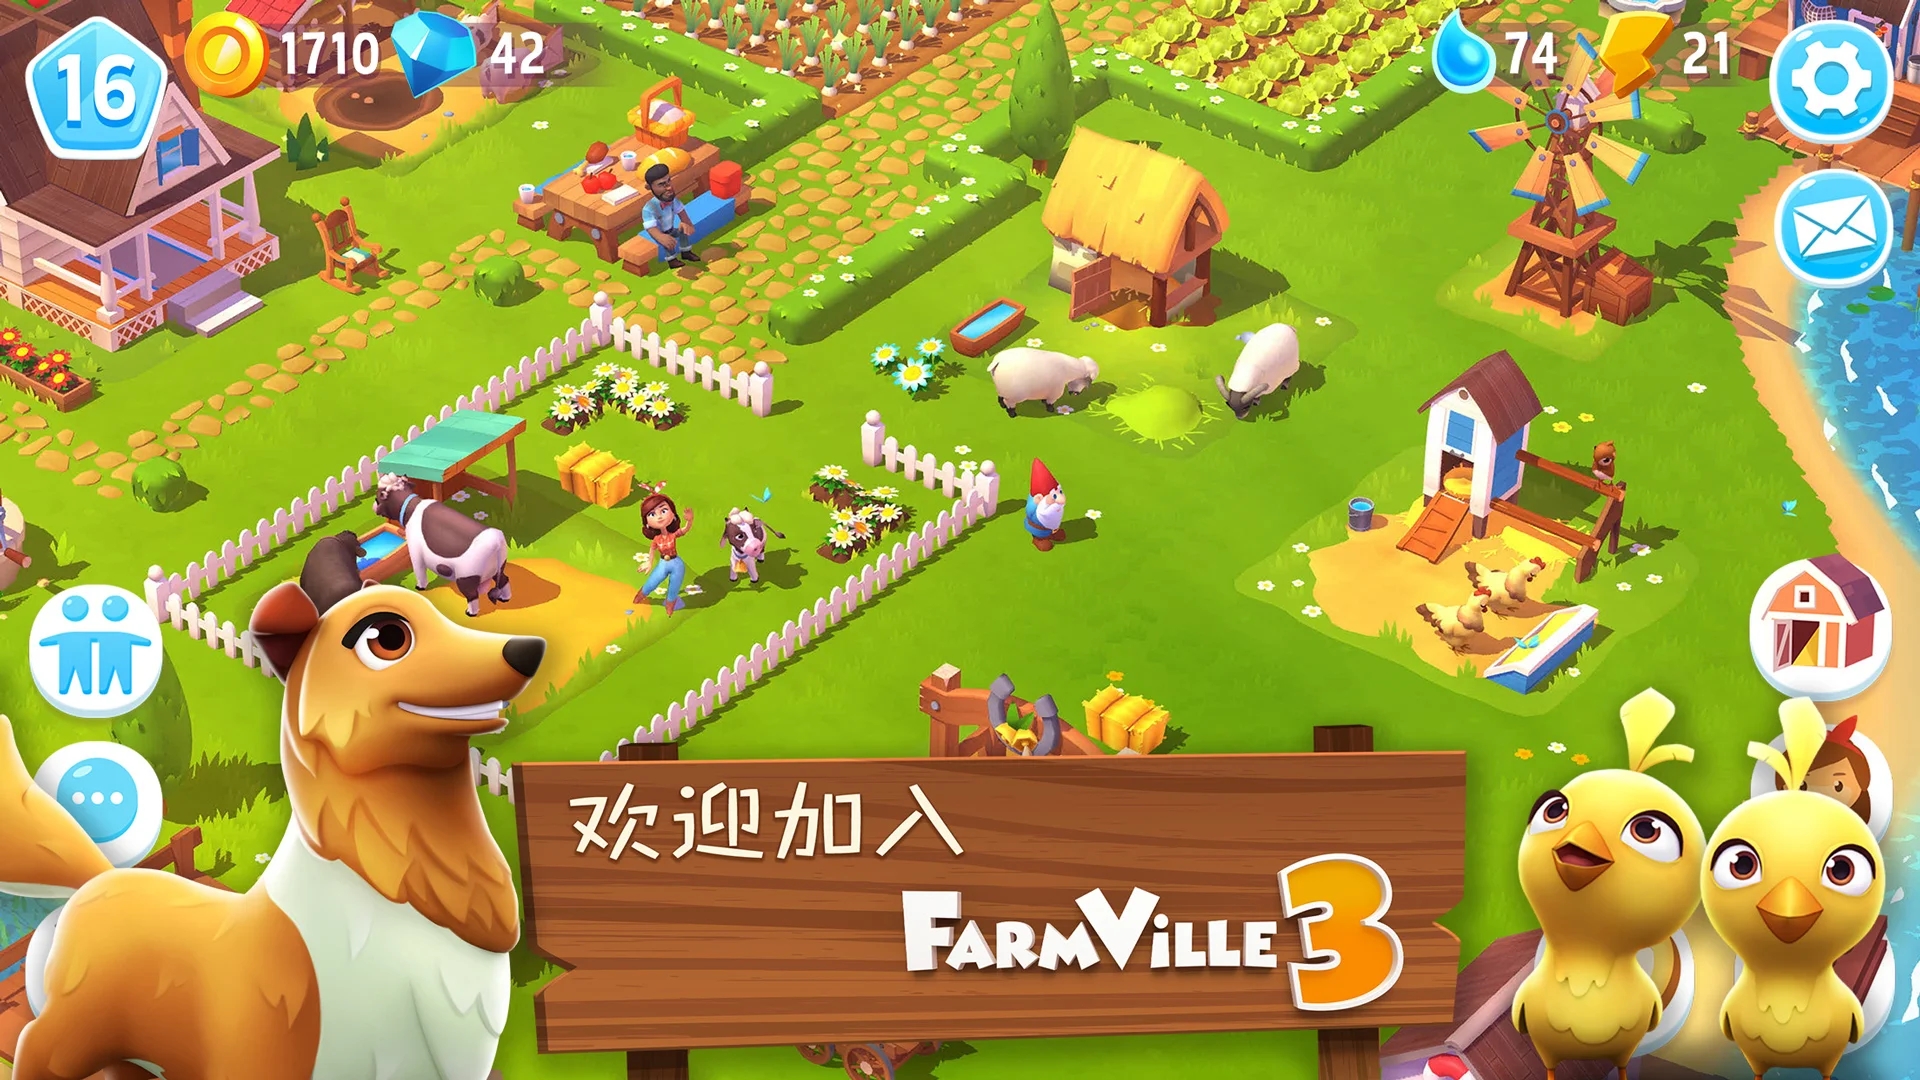 FarmVille3农场动物最新版 v1.42.42366 官方版4